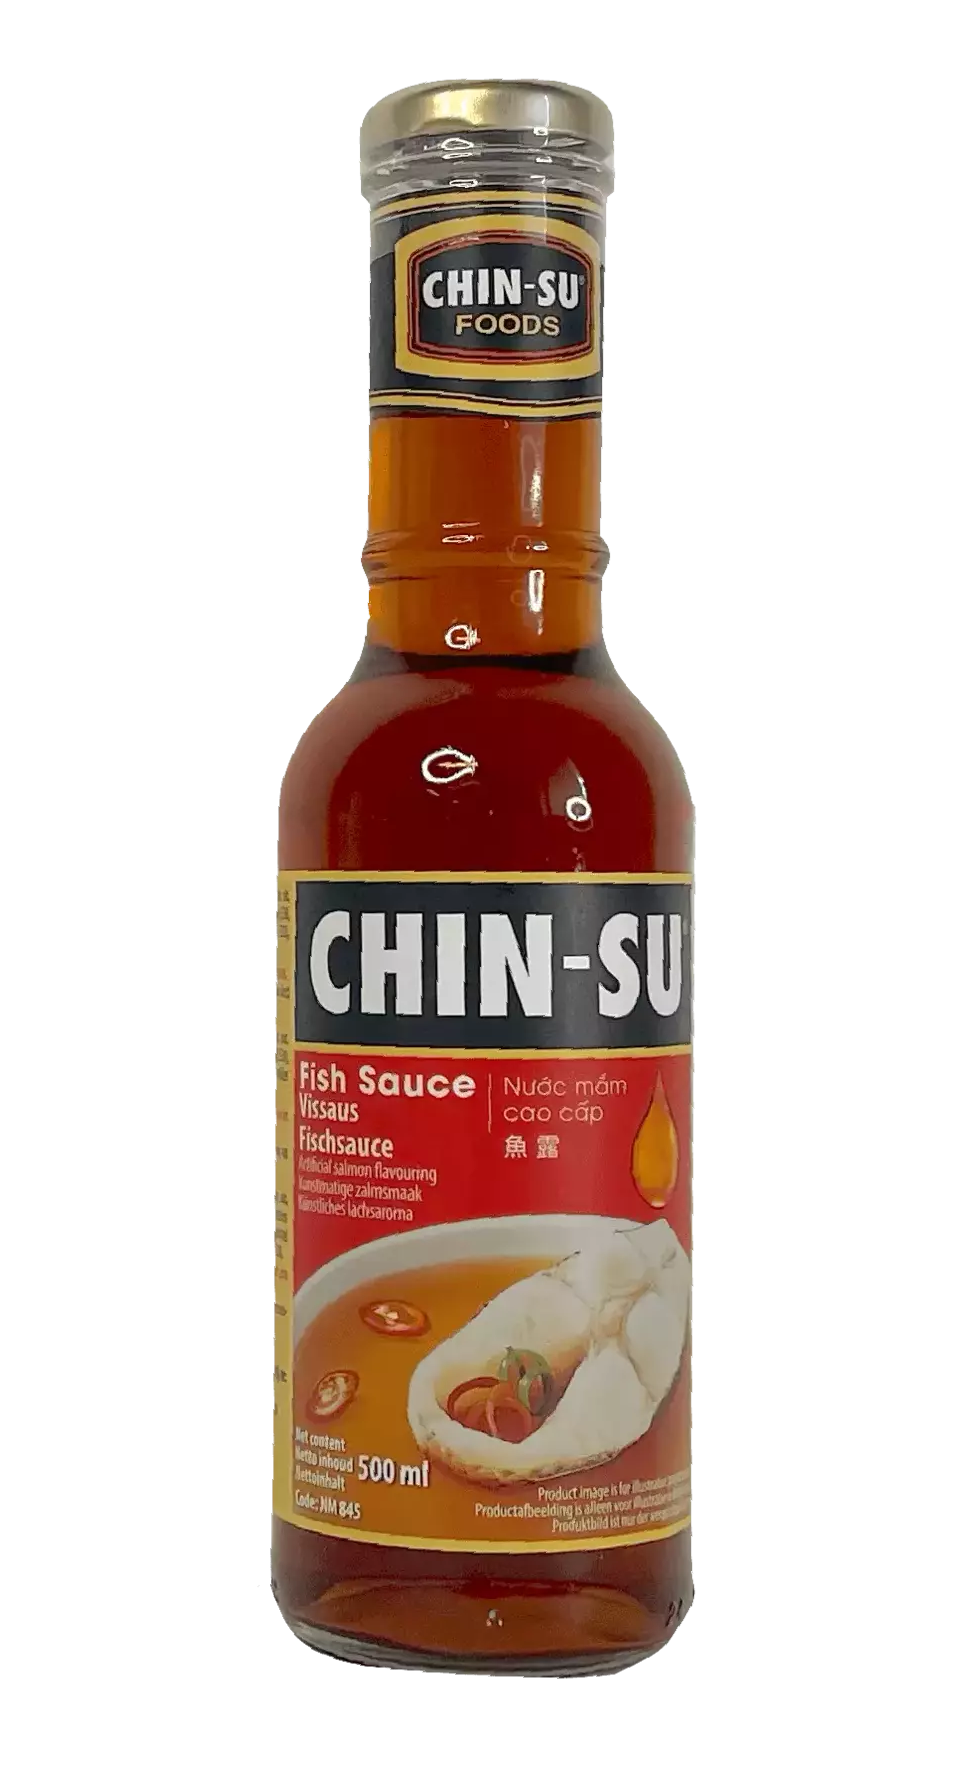 Fish Sauce 500ml Chin-Su Vietnam